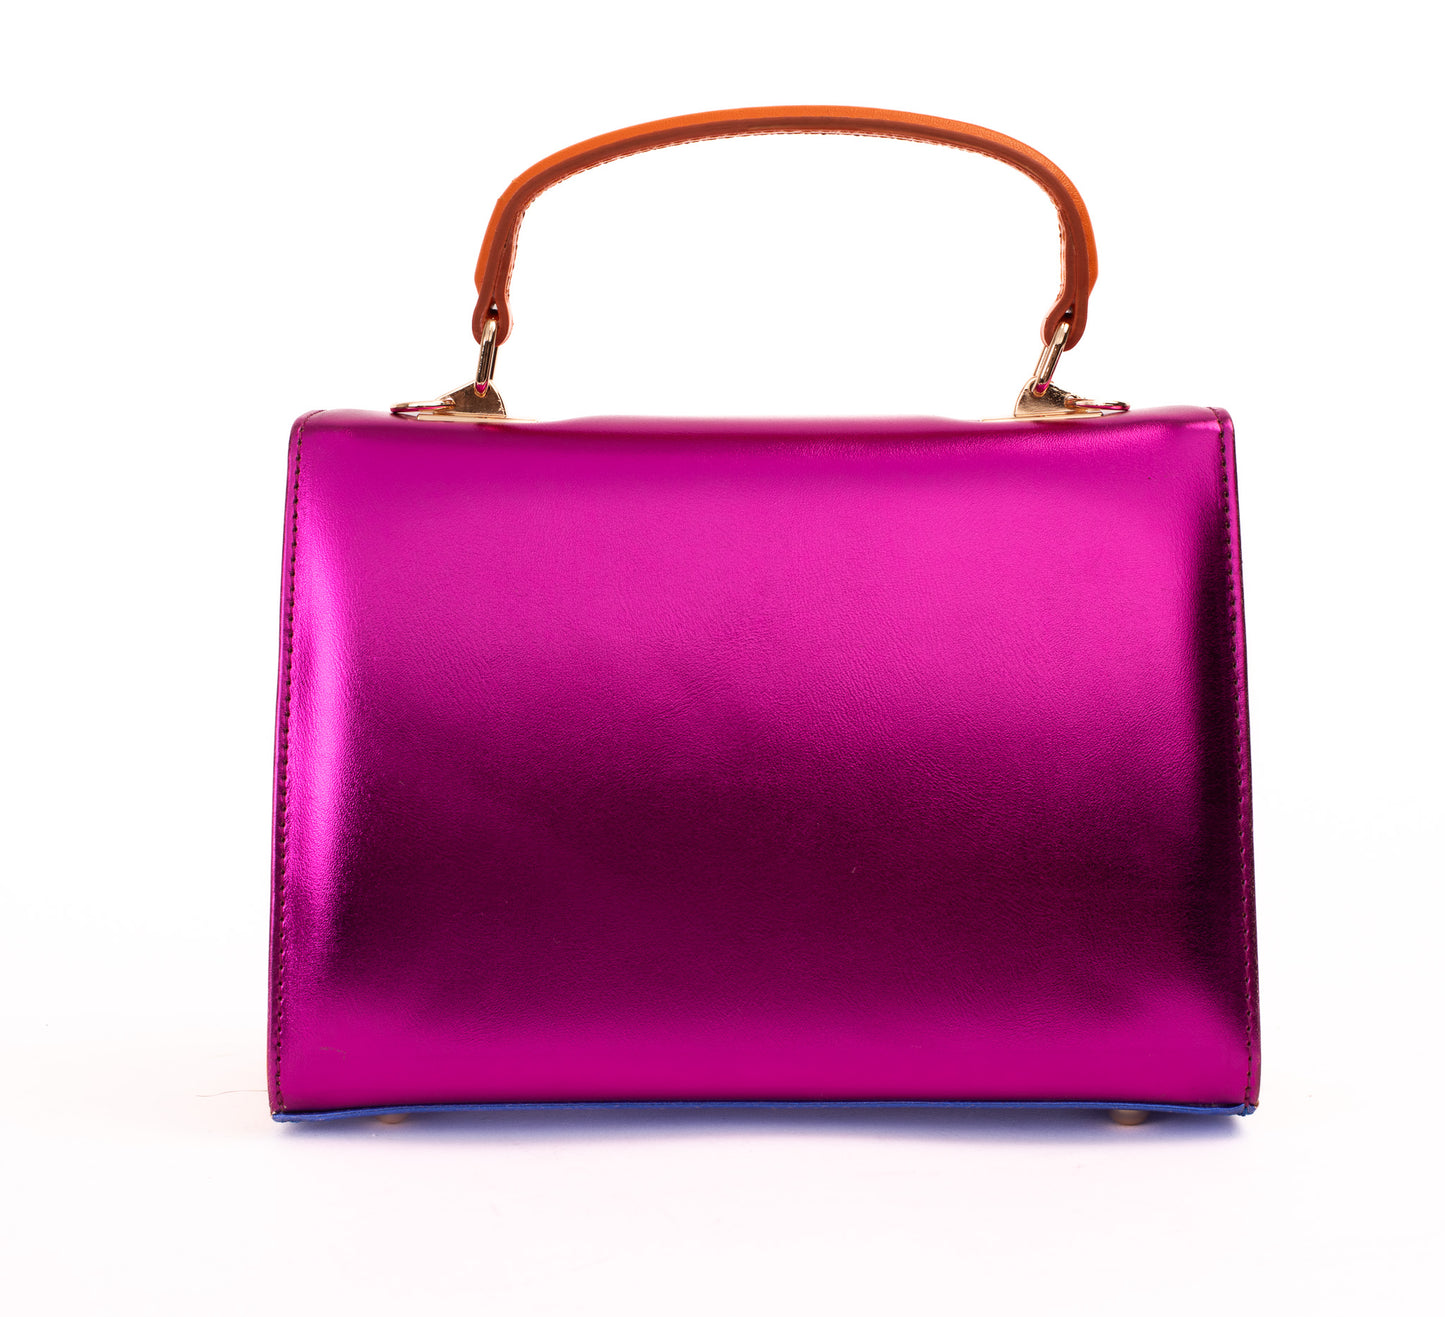 The Duffryn Fuschia Leather Handbag